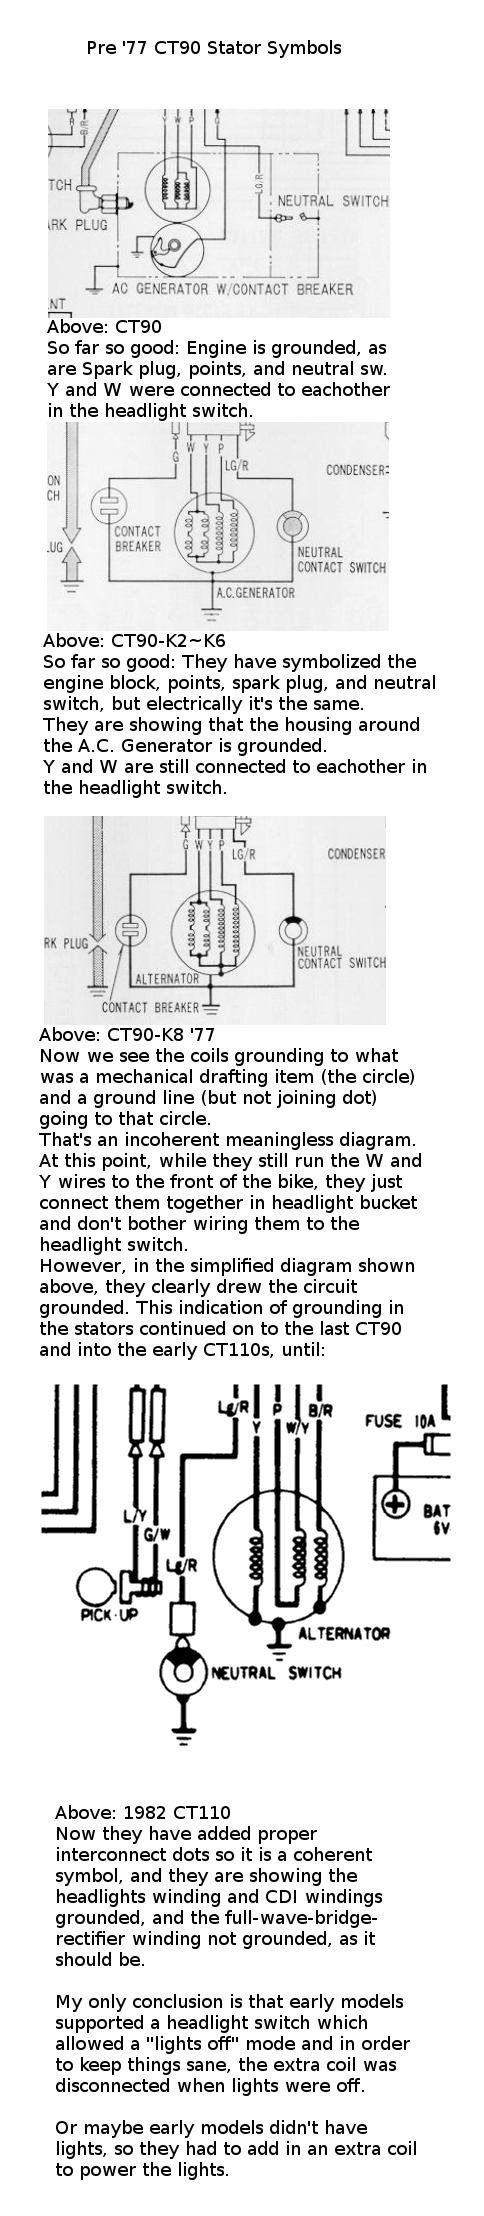 1977/1978 CT90 wiring diagram, need help understanding rectifier and